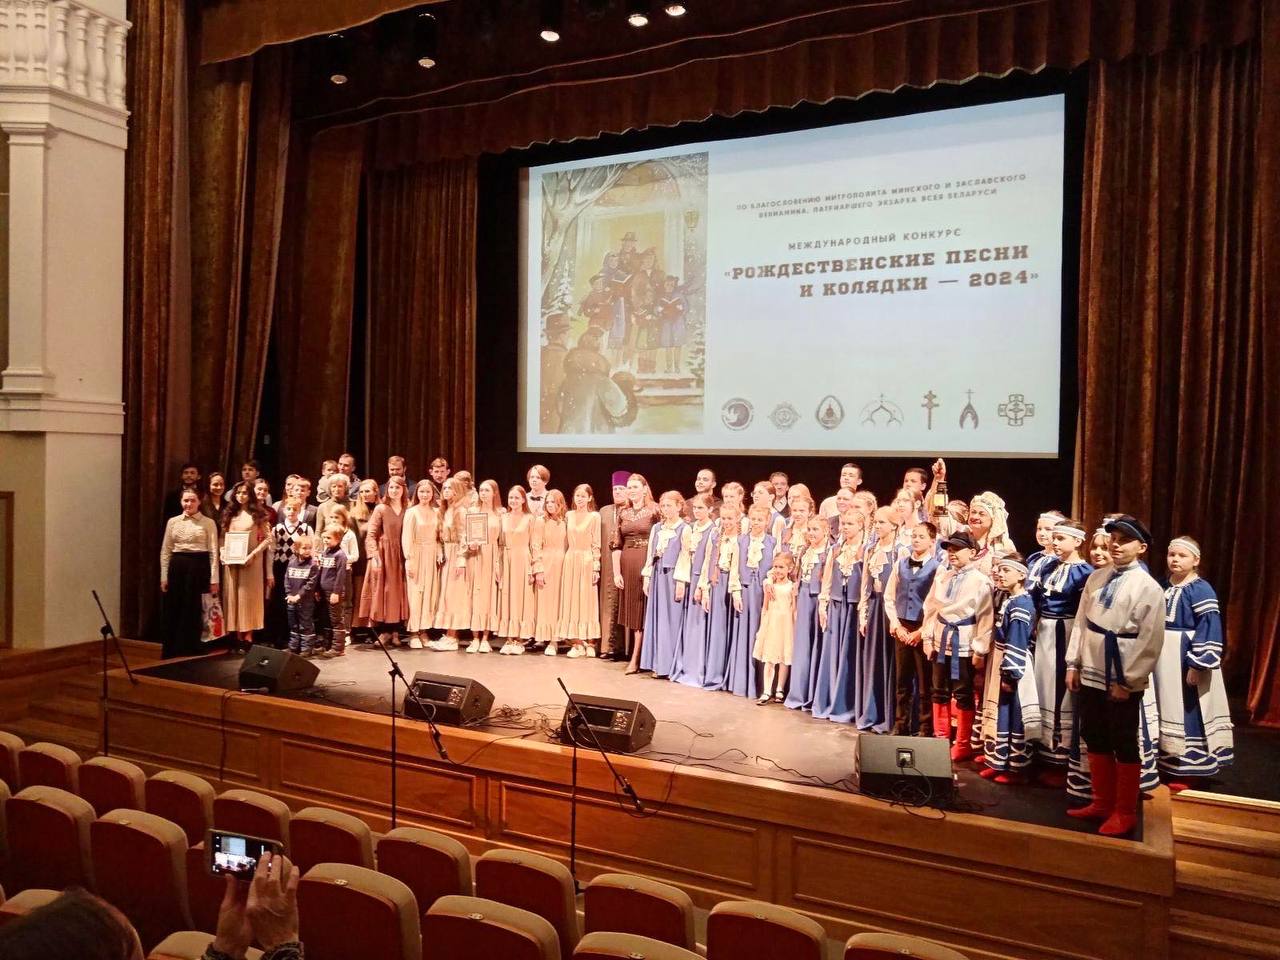 Детский хор при Центре «Покрова» стал обладателем I места международного конкурса «Рождественские песни и колядки — 2024»